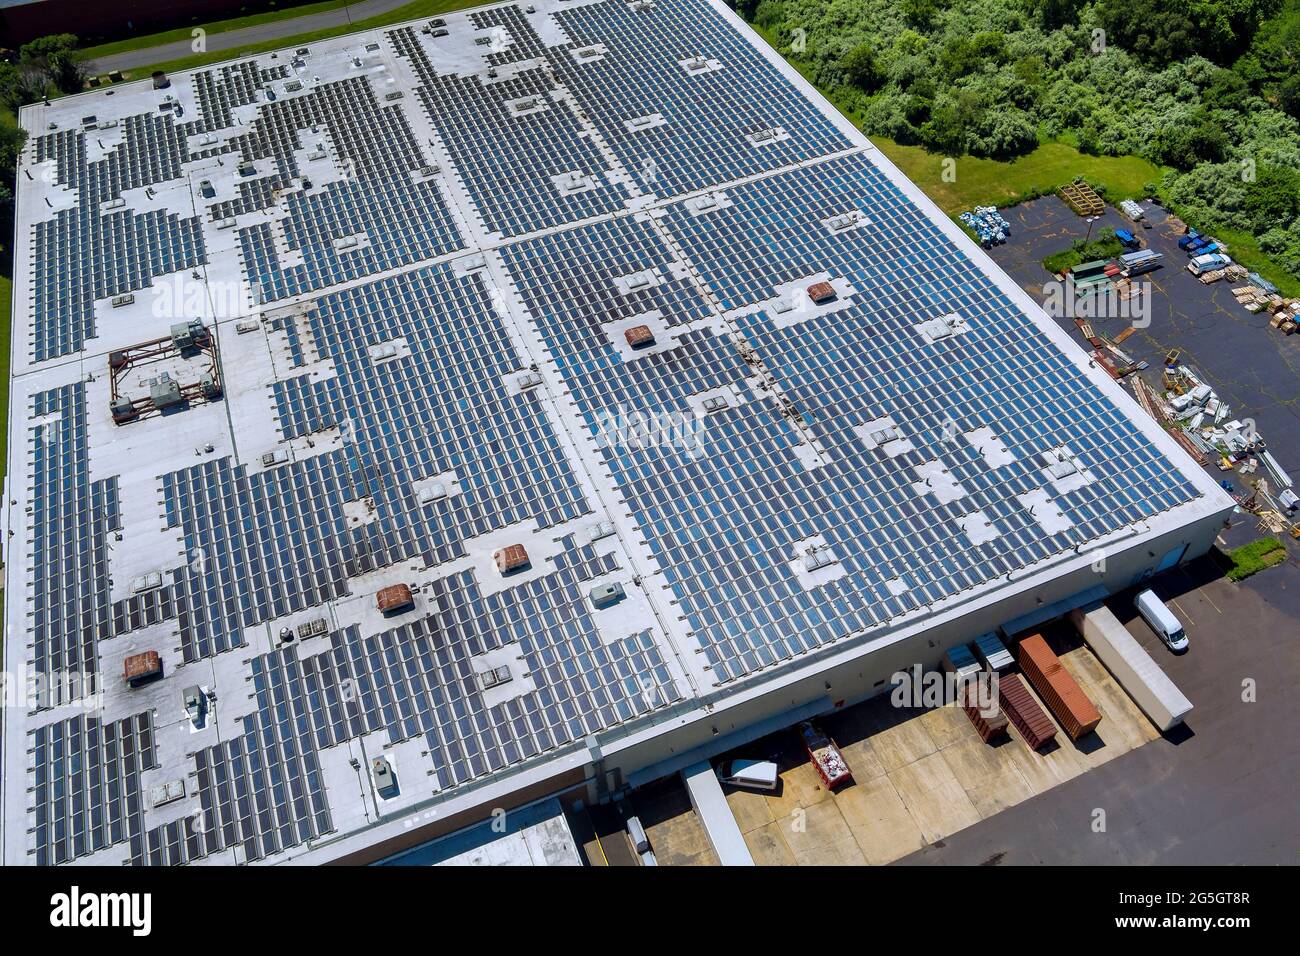 La vista panorámica de los paneles solares en el techo de la fábrica absorbe la luz del sol como fuente de energía para generar electricidad creando energía sostenible Foto de stock